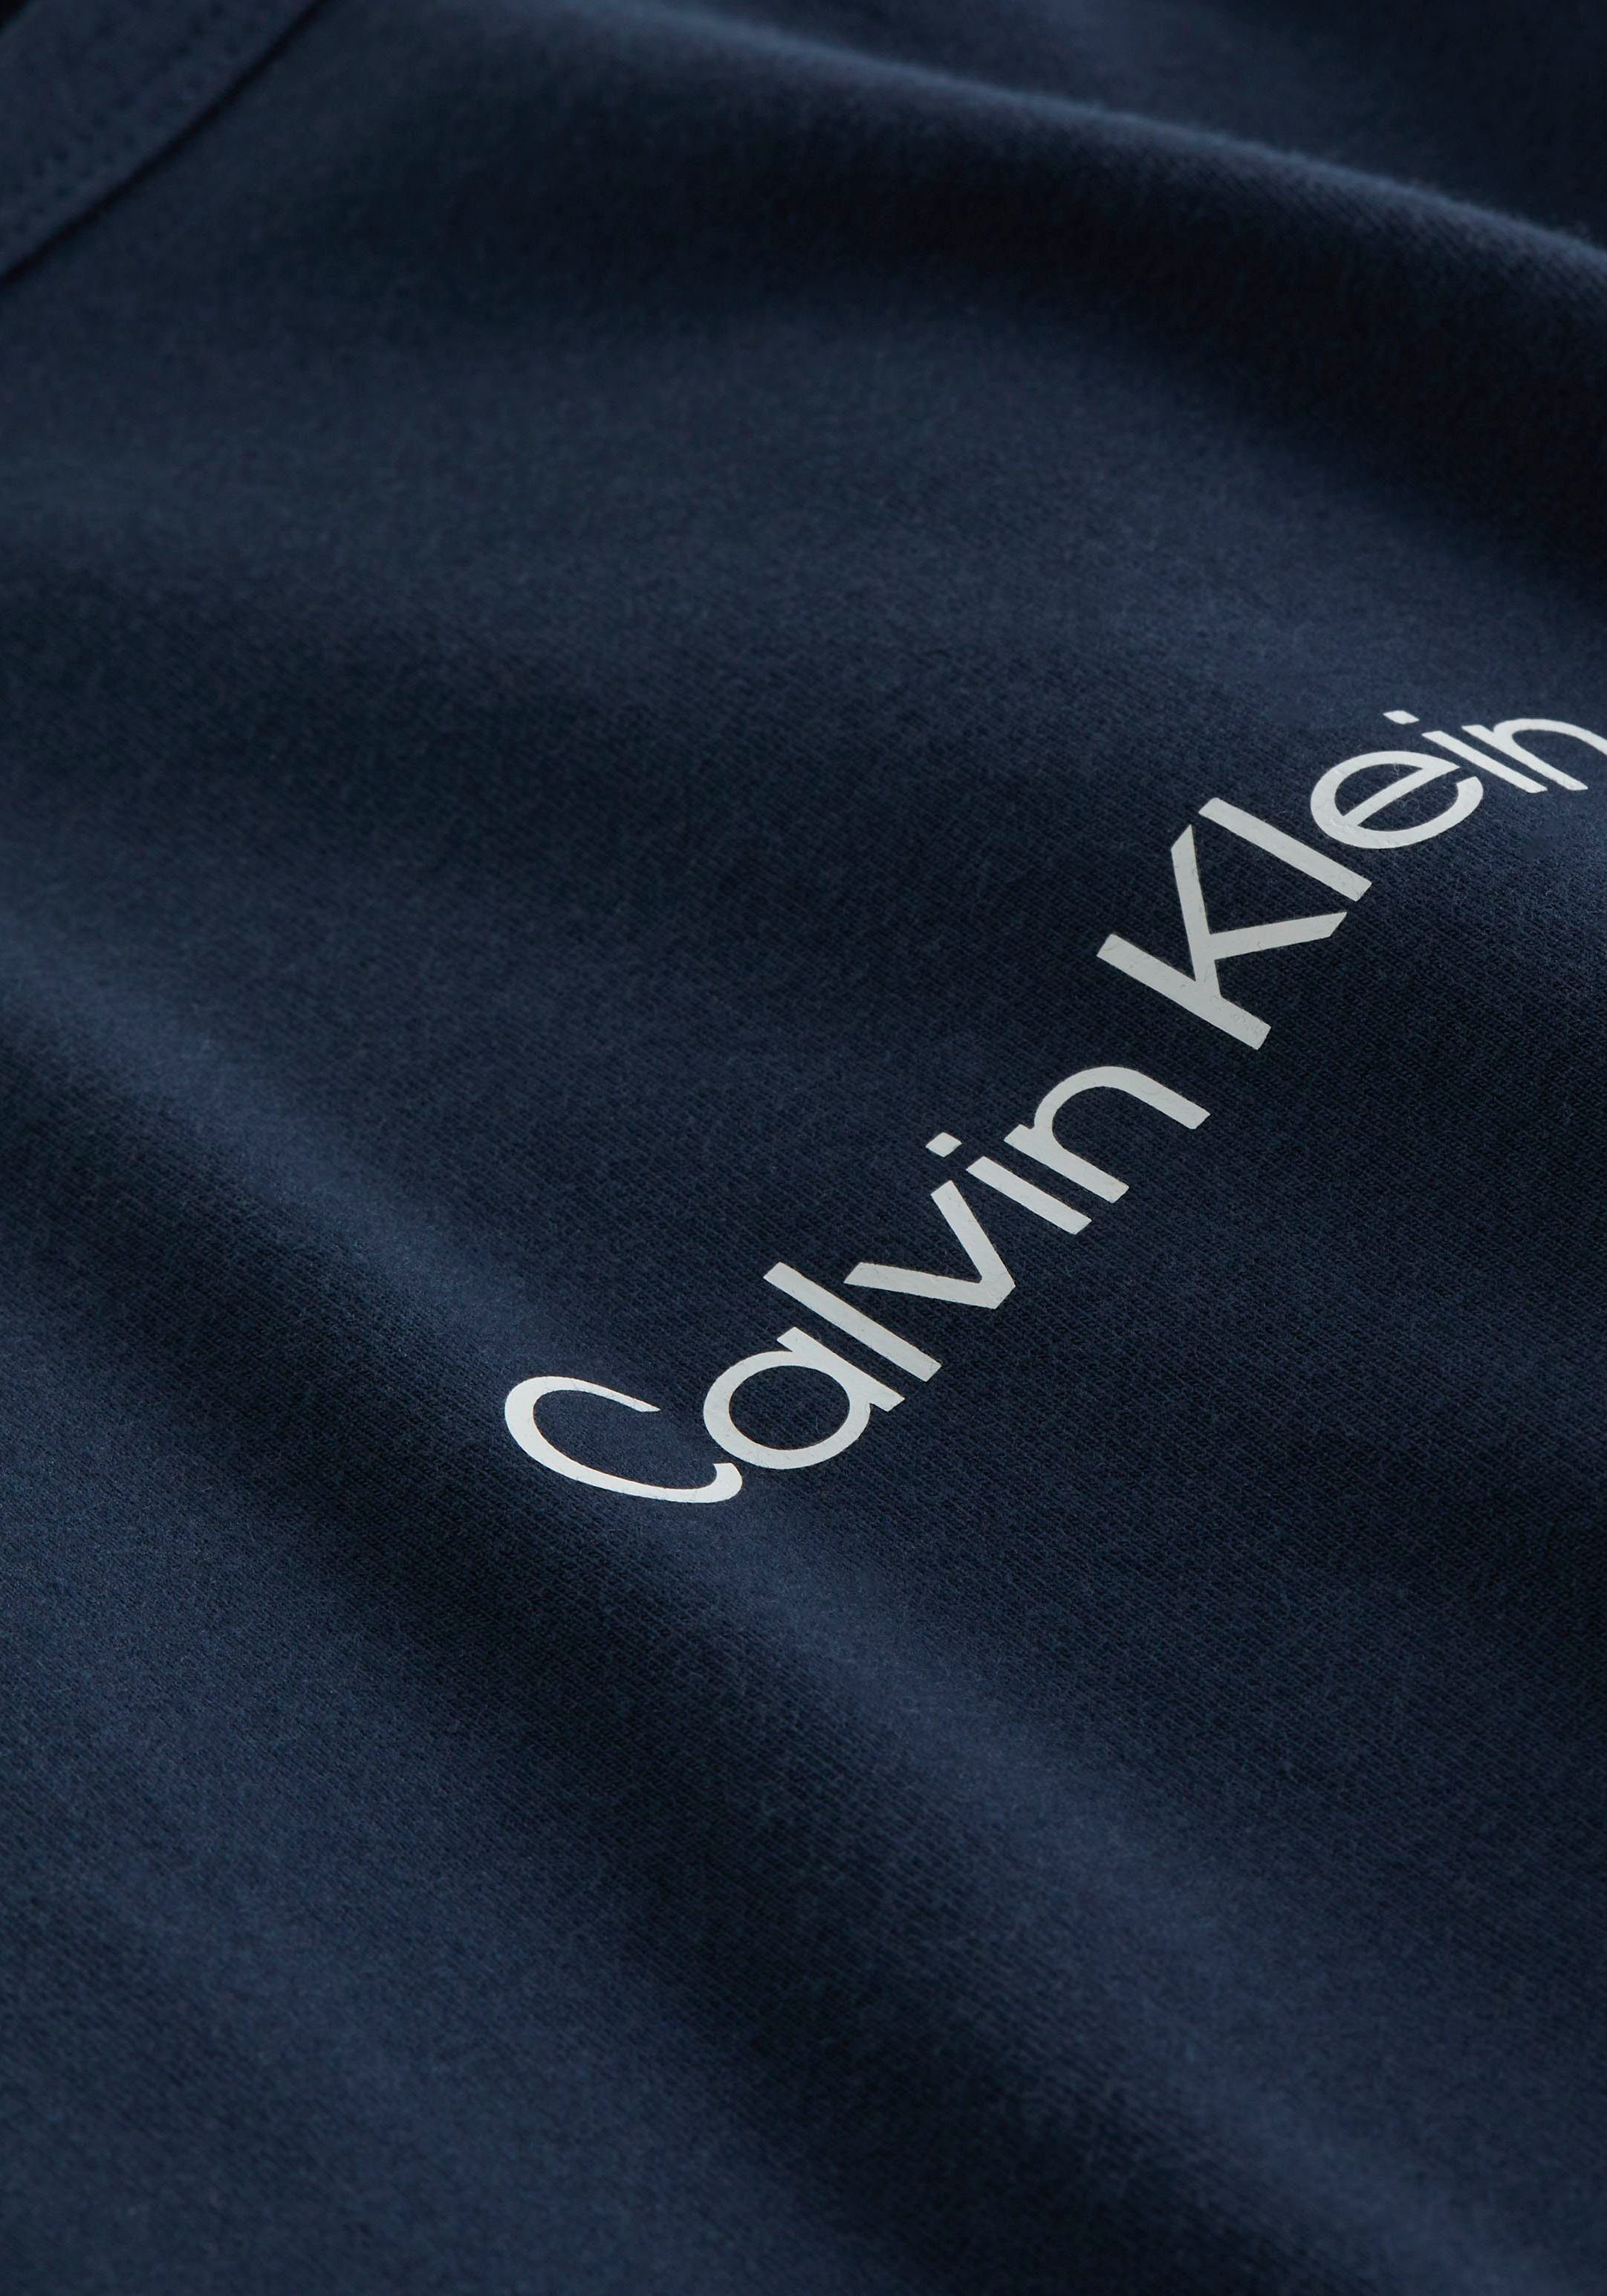 Calvin Klein Pyjama L S PANT SET met rechte pijpen (2-delig)